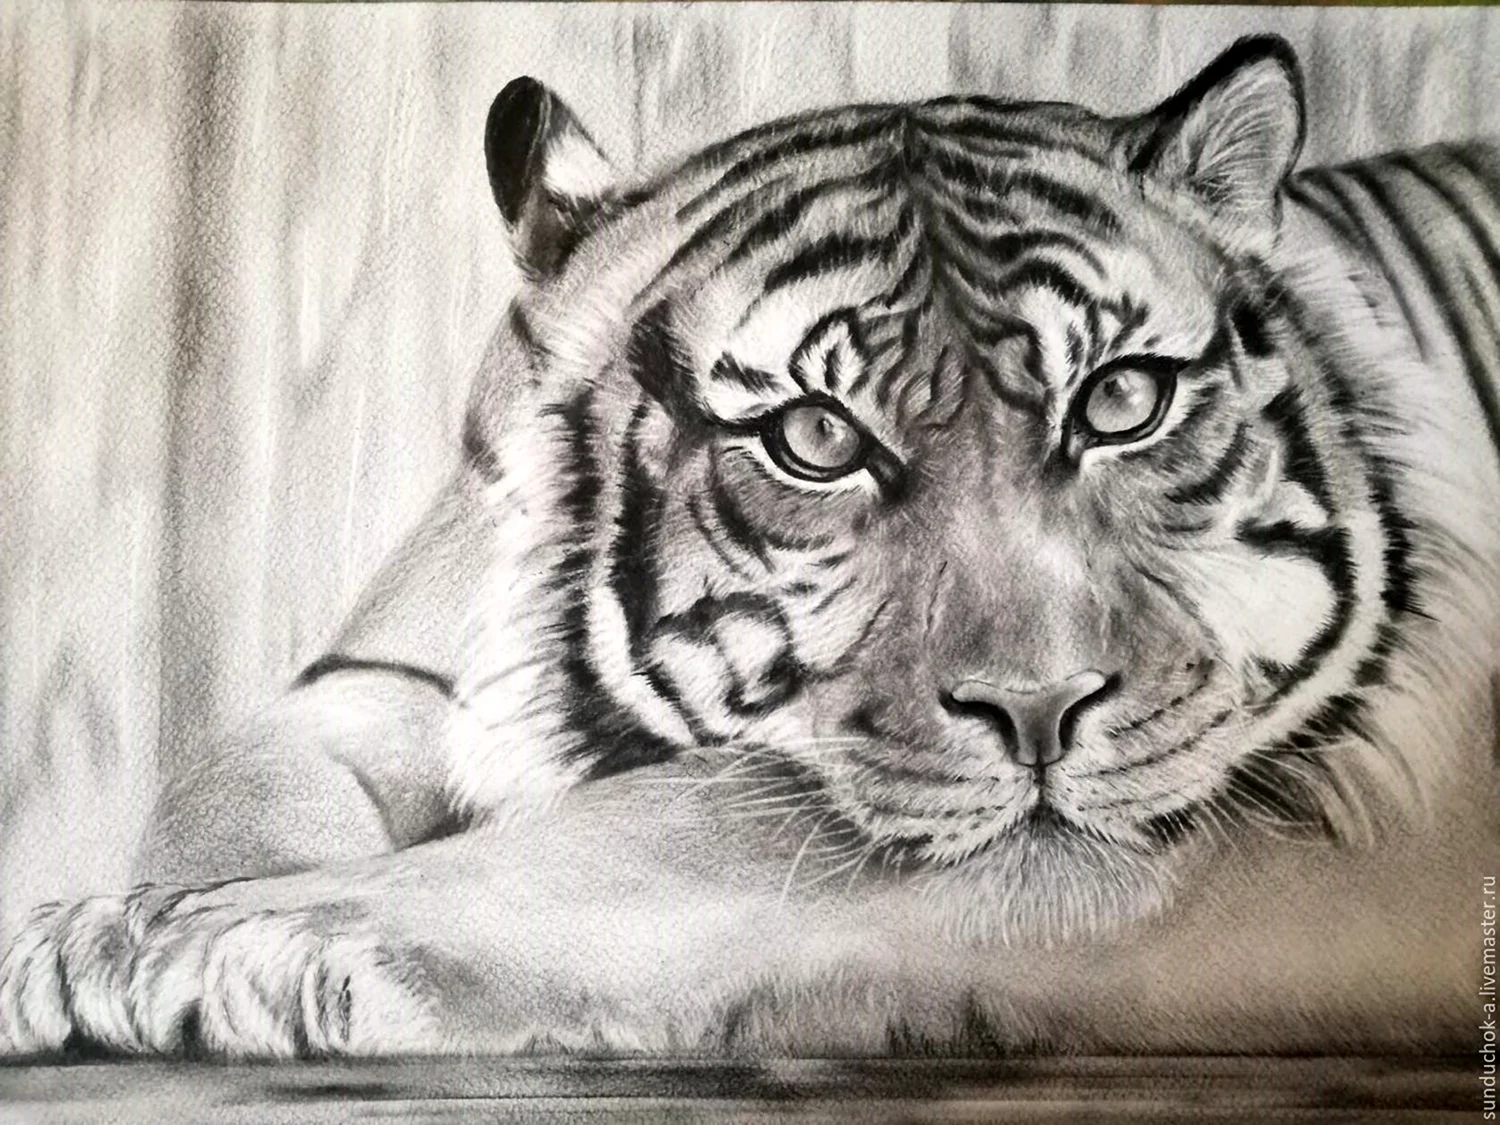 Как нарисовать (рисовать) тигра - поэтапные рисунки и видеоуроки